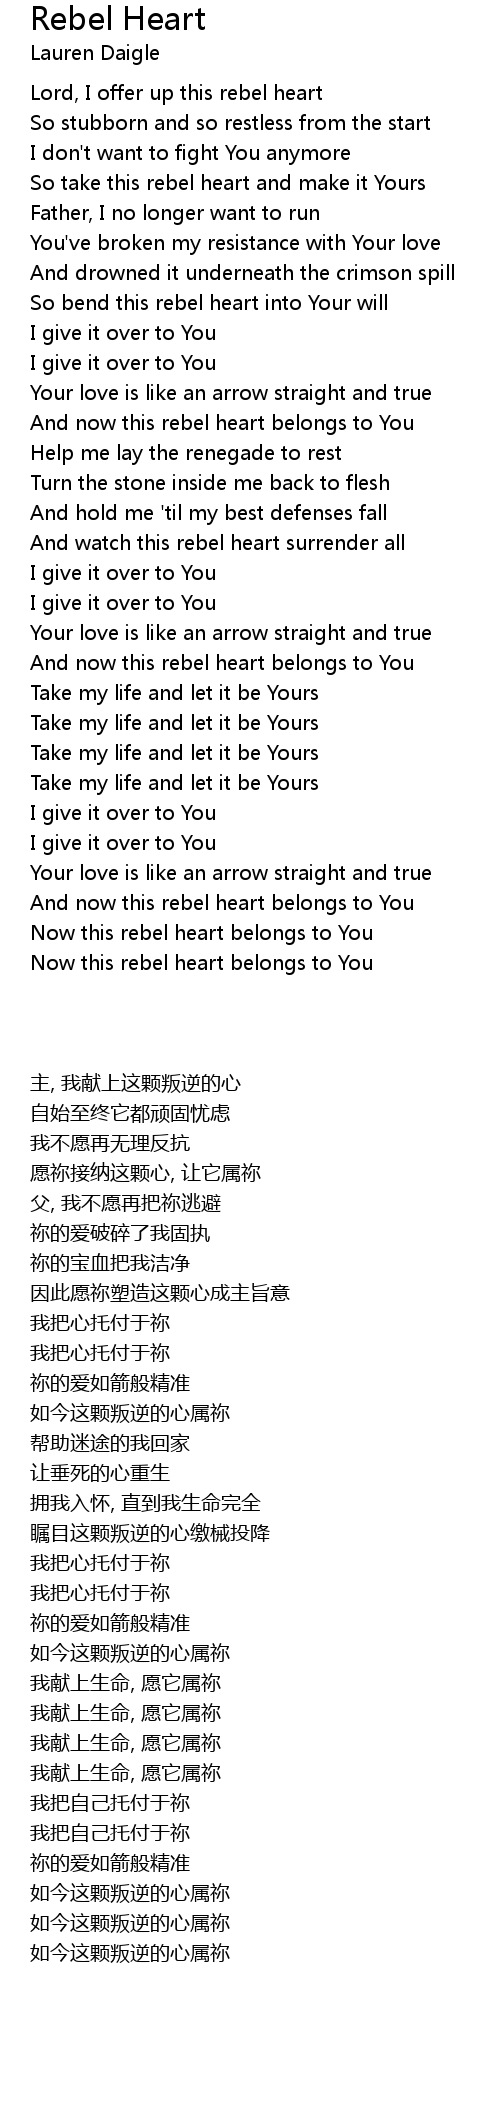 Lauren Daigle ~ Rebel Heart (Lyrics) 